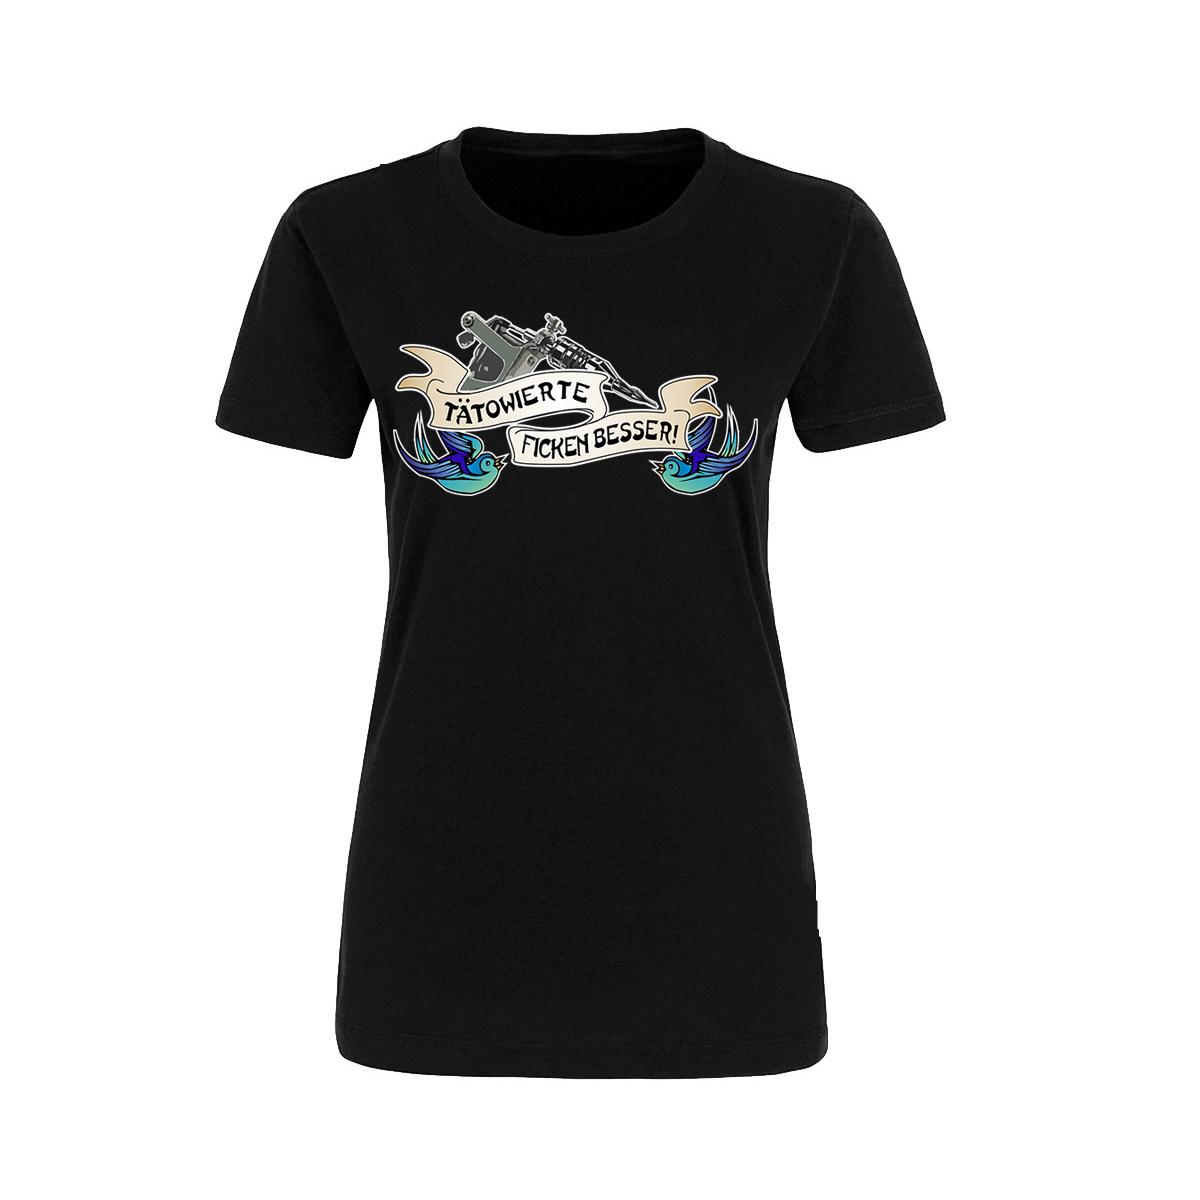 Tätowierte ficken besser - Frauen T-Shirt - schwarz